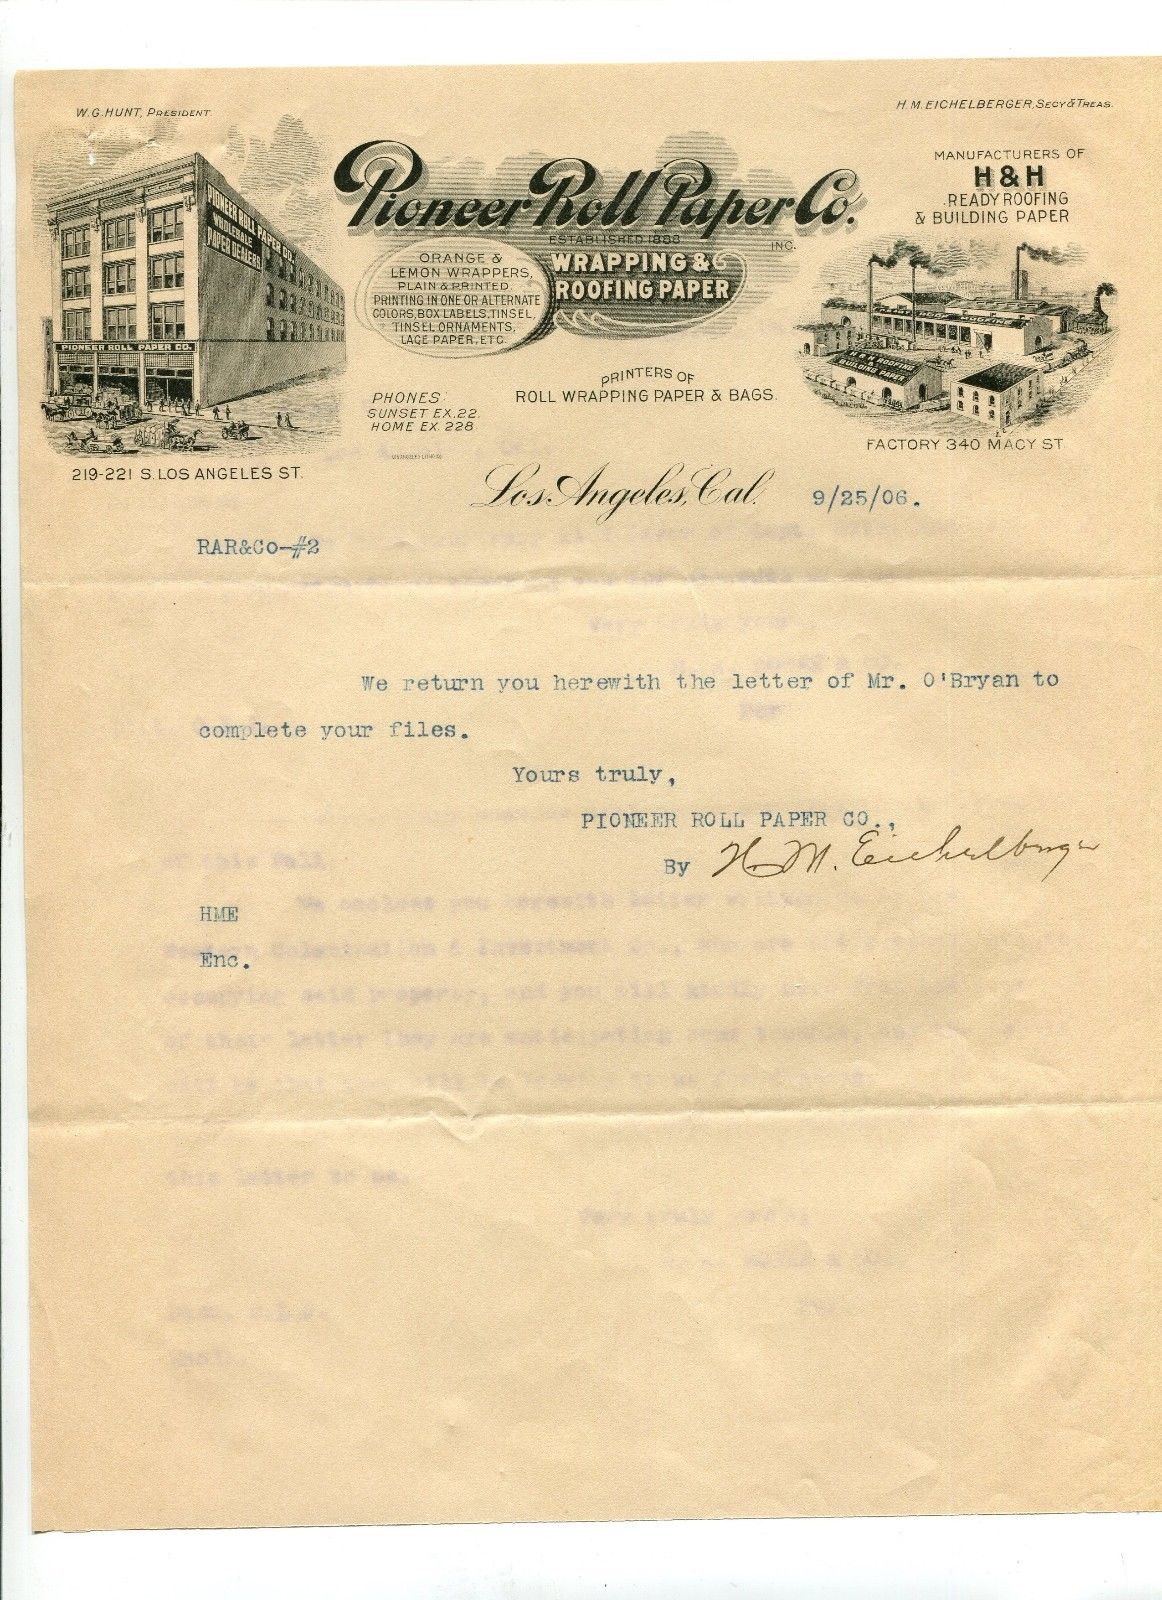 Pioneer Roll Paper Co. Letterhead